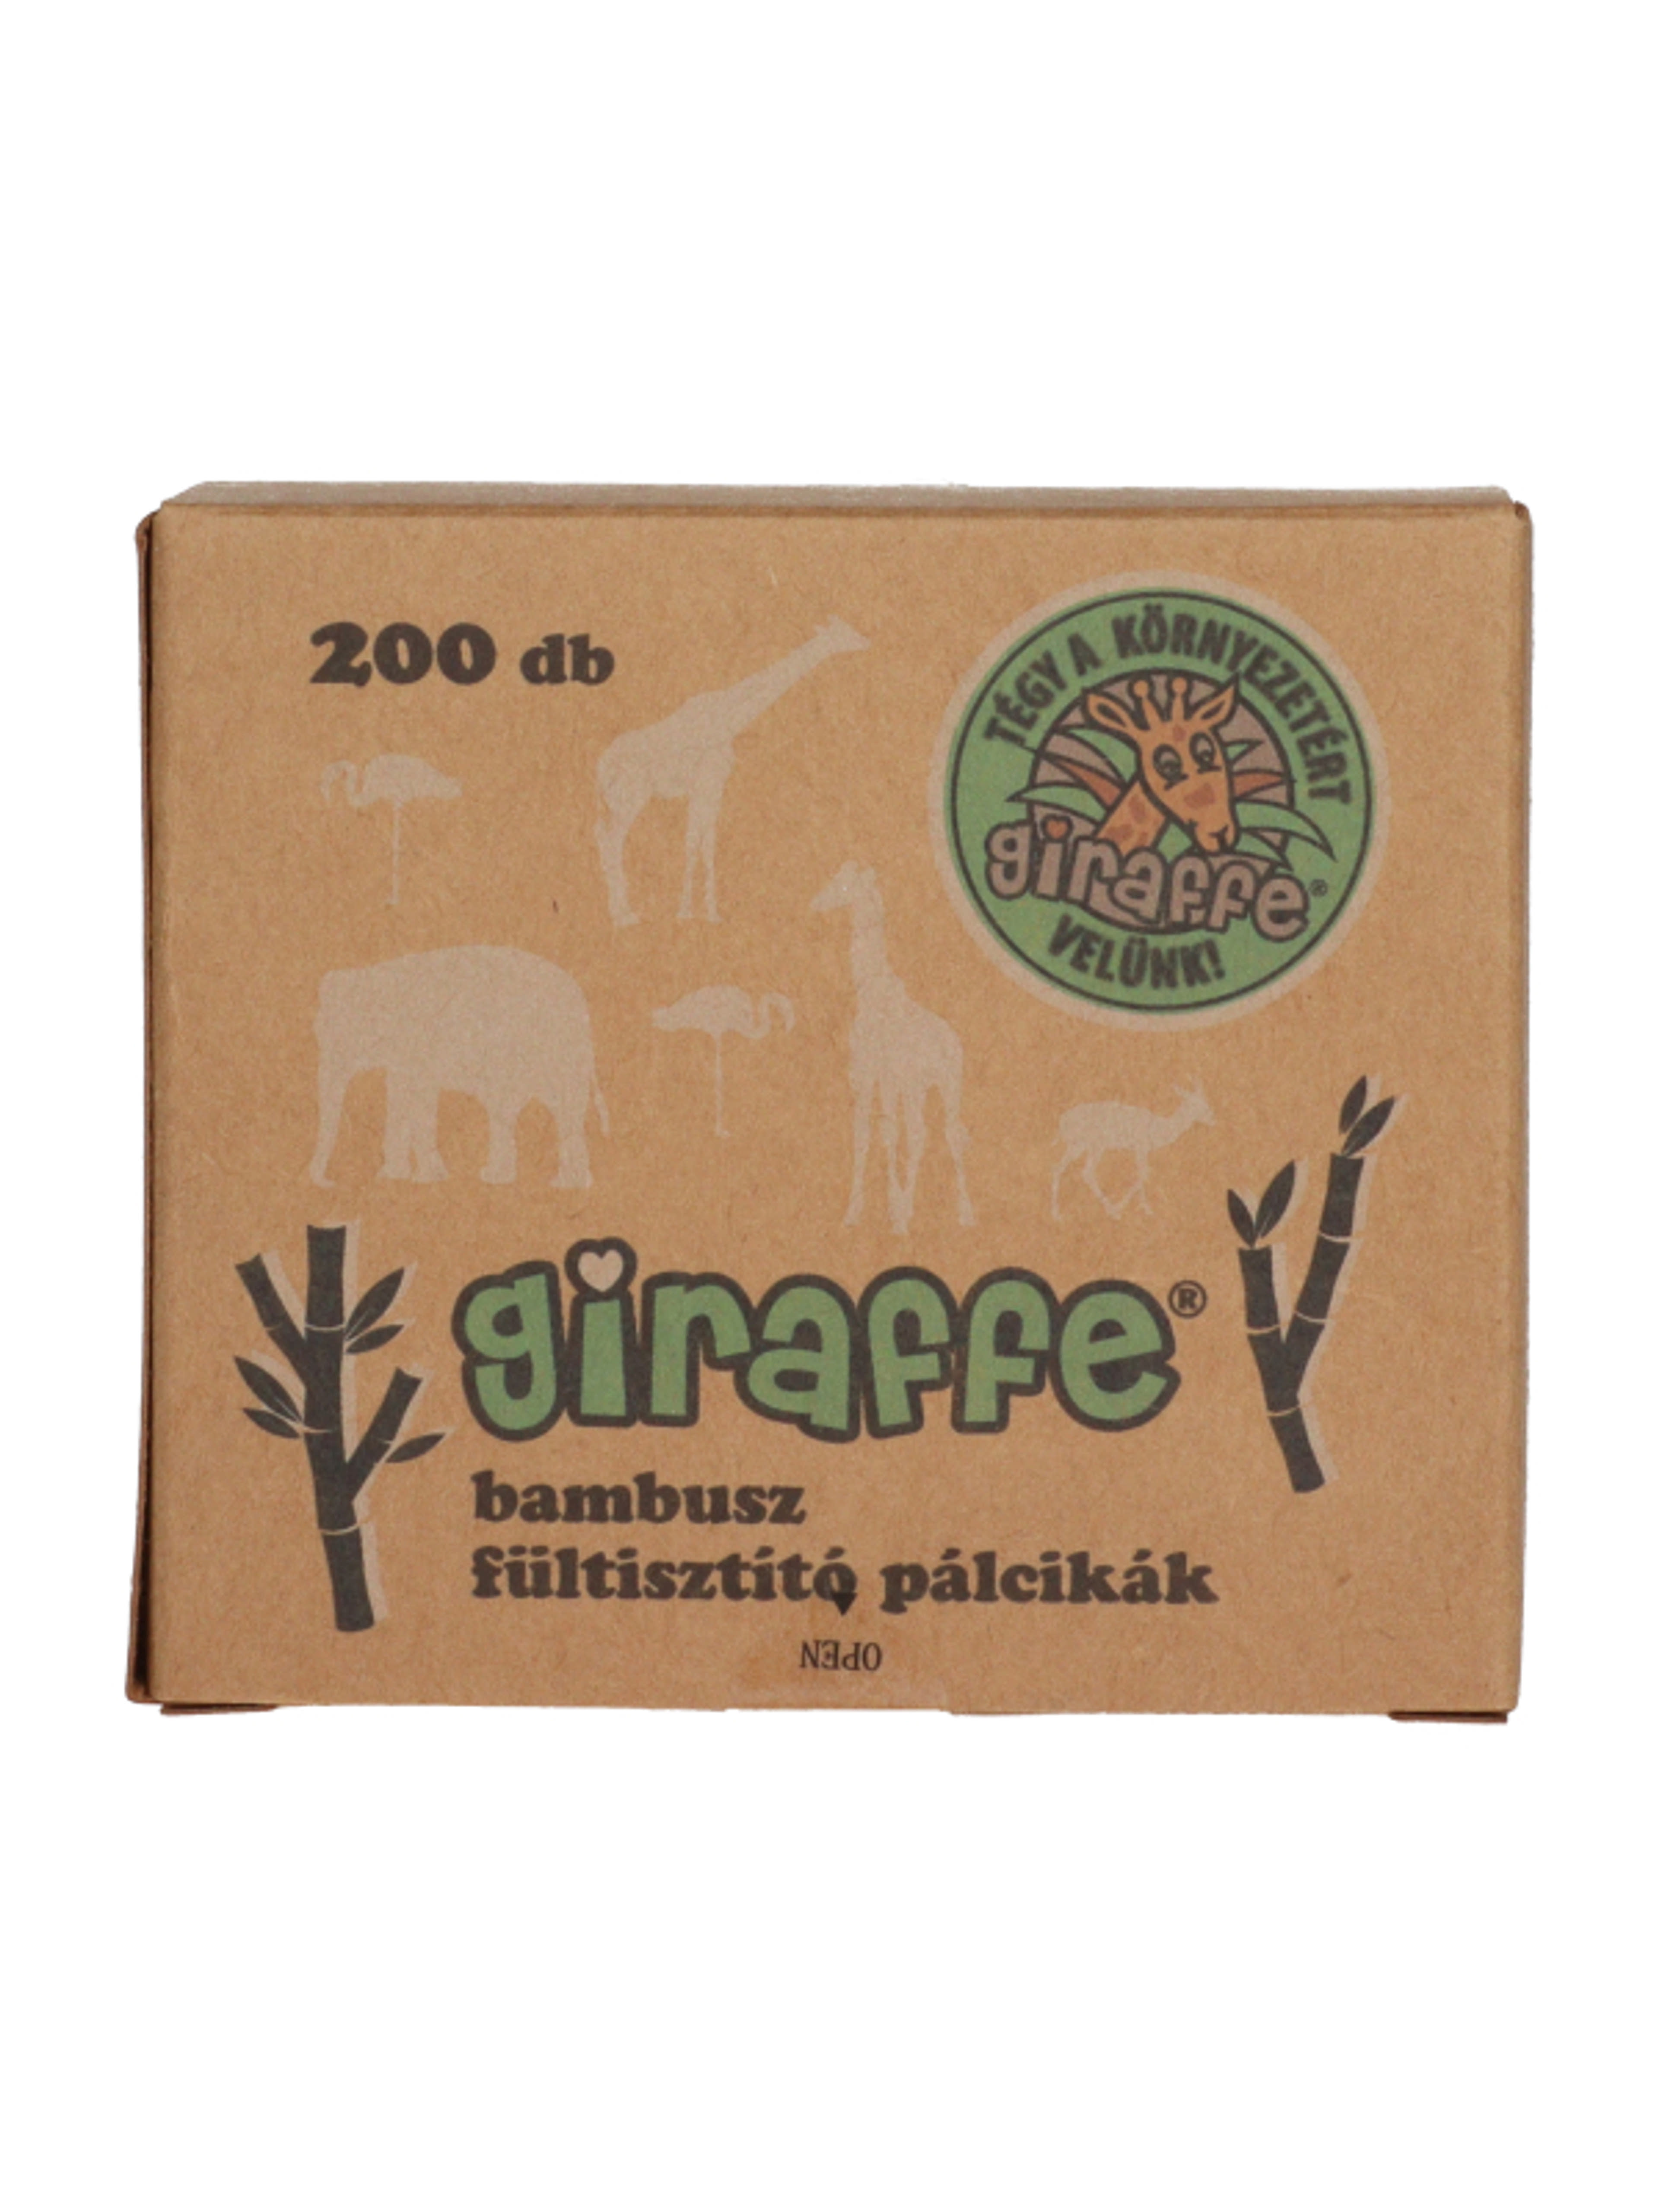 Giraffe fültisztitó pálcika - 200 db